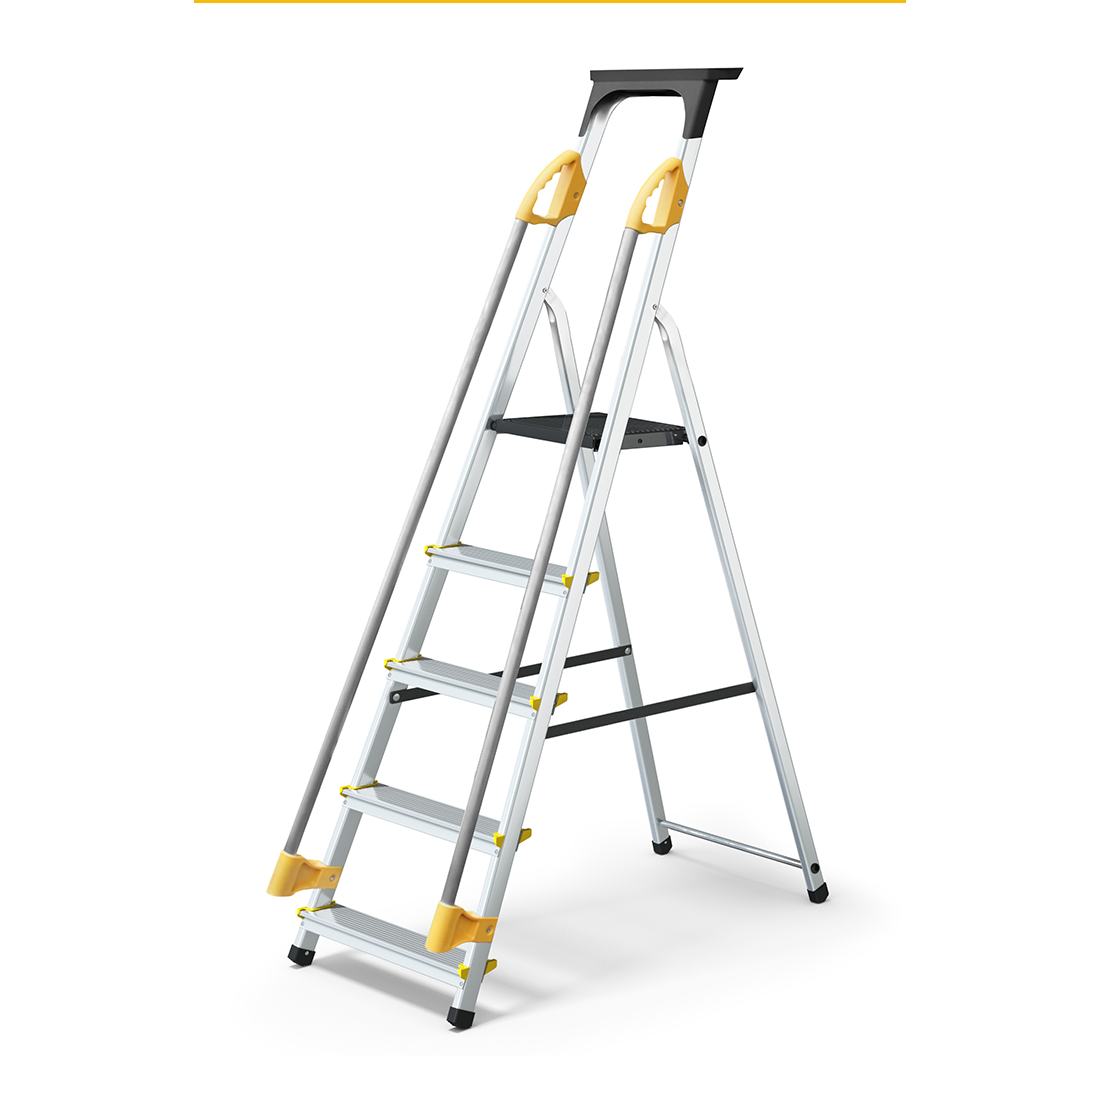 Escalera de plataforma de aluminio Reach SafeStep tipo IA de 9.5 pies con pasamanos y bandeja para herramientas - 330 lbs. Capacidad de carga